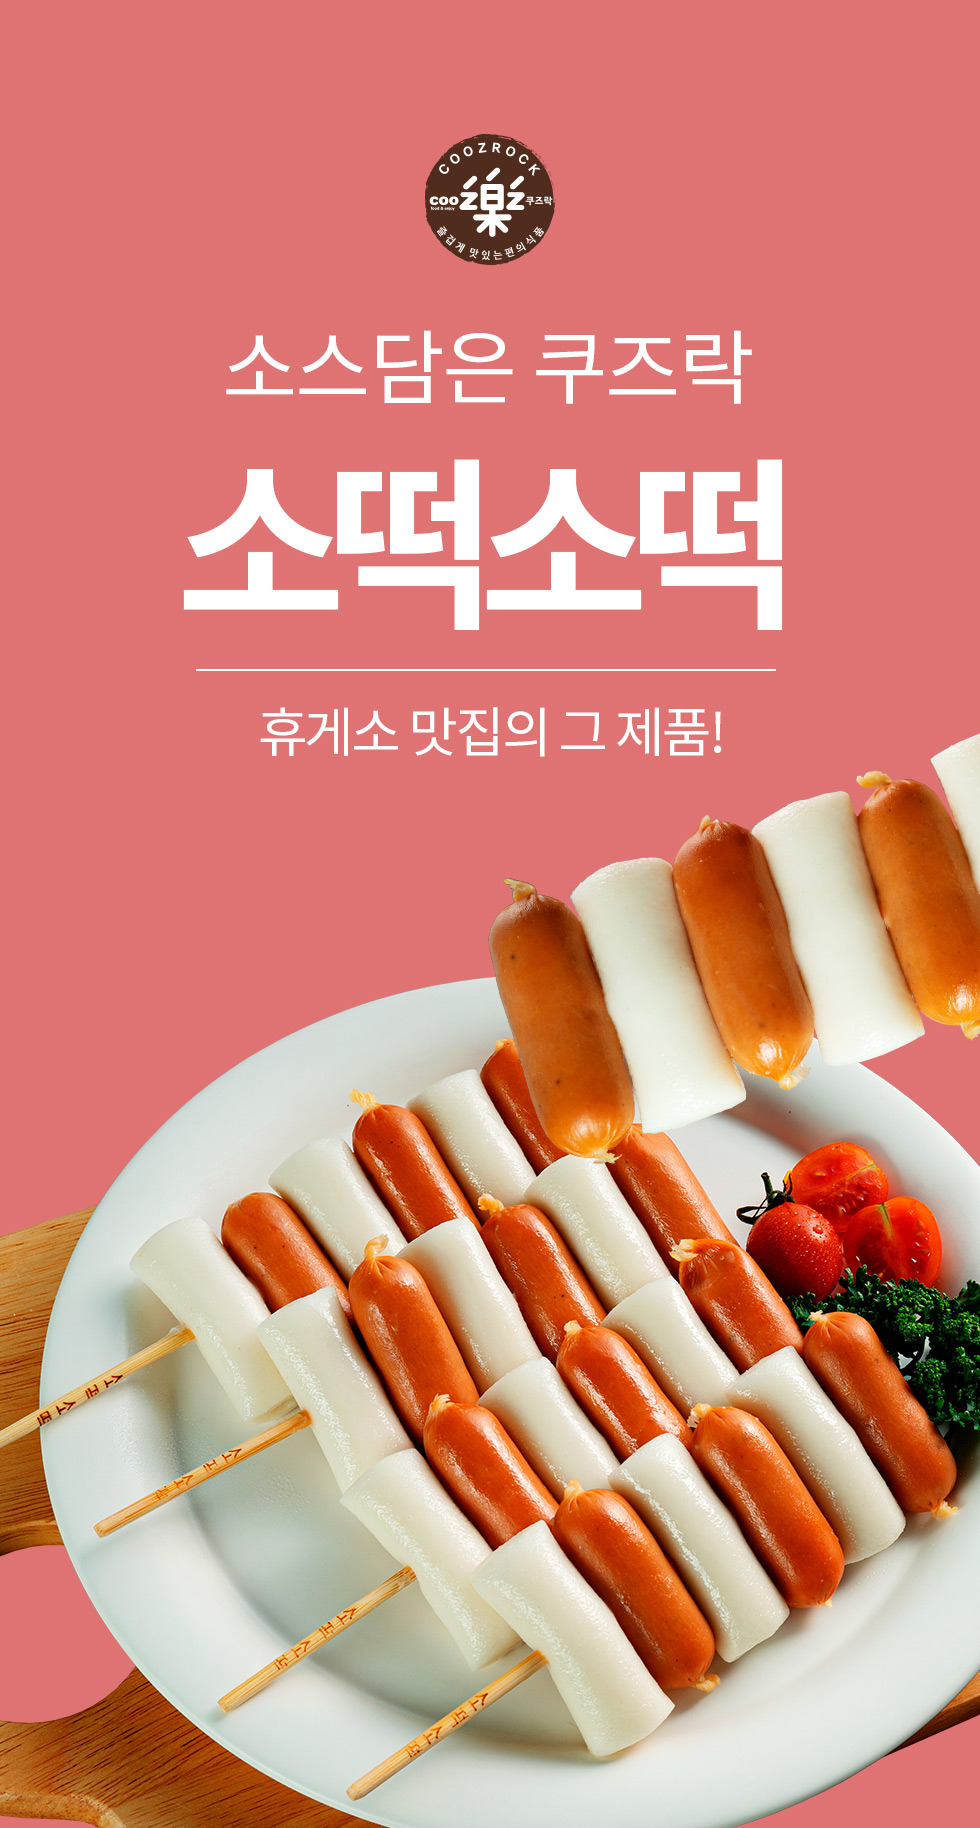 韓國食品-[쿠즈락앳홈] 소스담은 쿠즈락 소떡소떡 135g